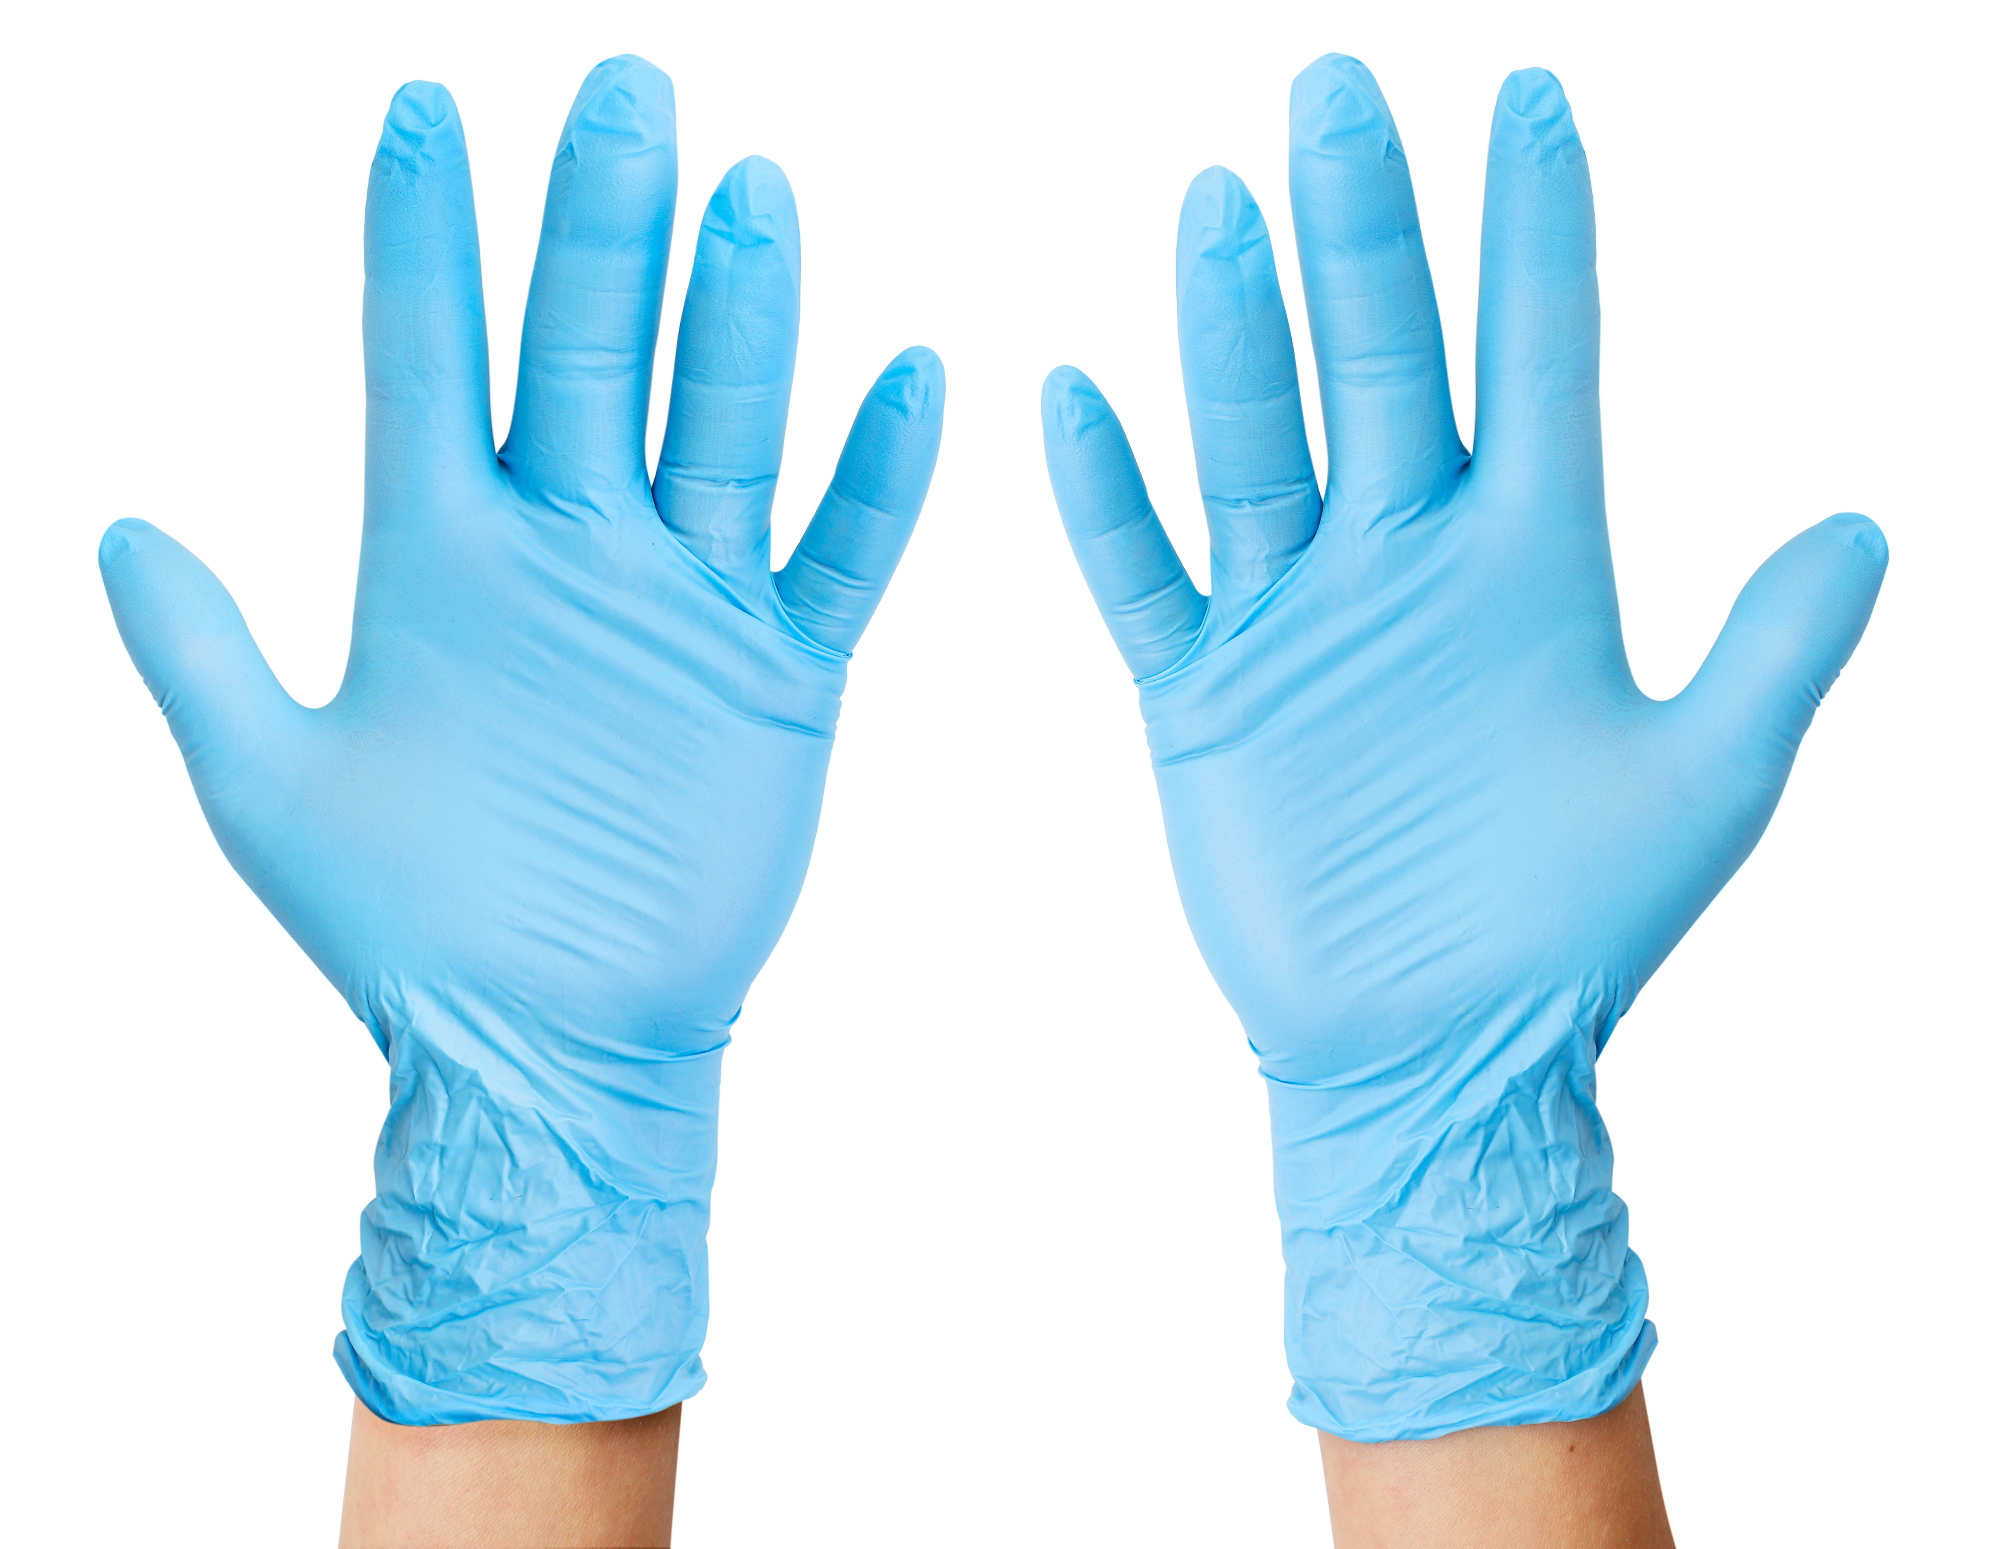 Za čiščenje uporabljam zaščitne rokavice, da ne poškodujem kože